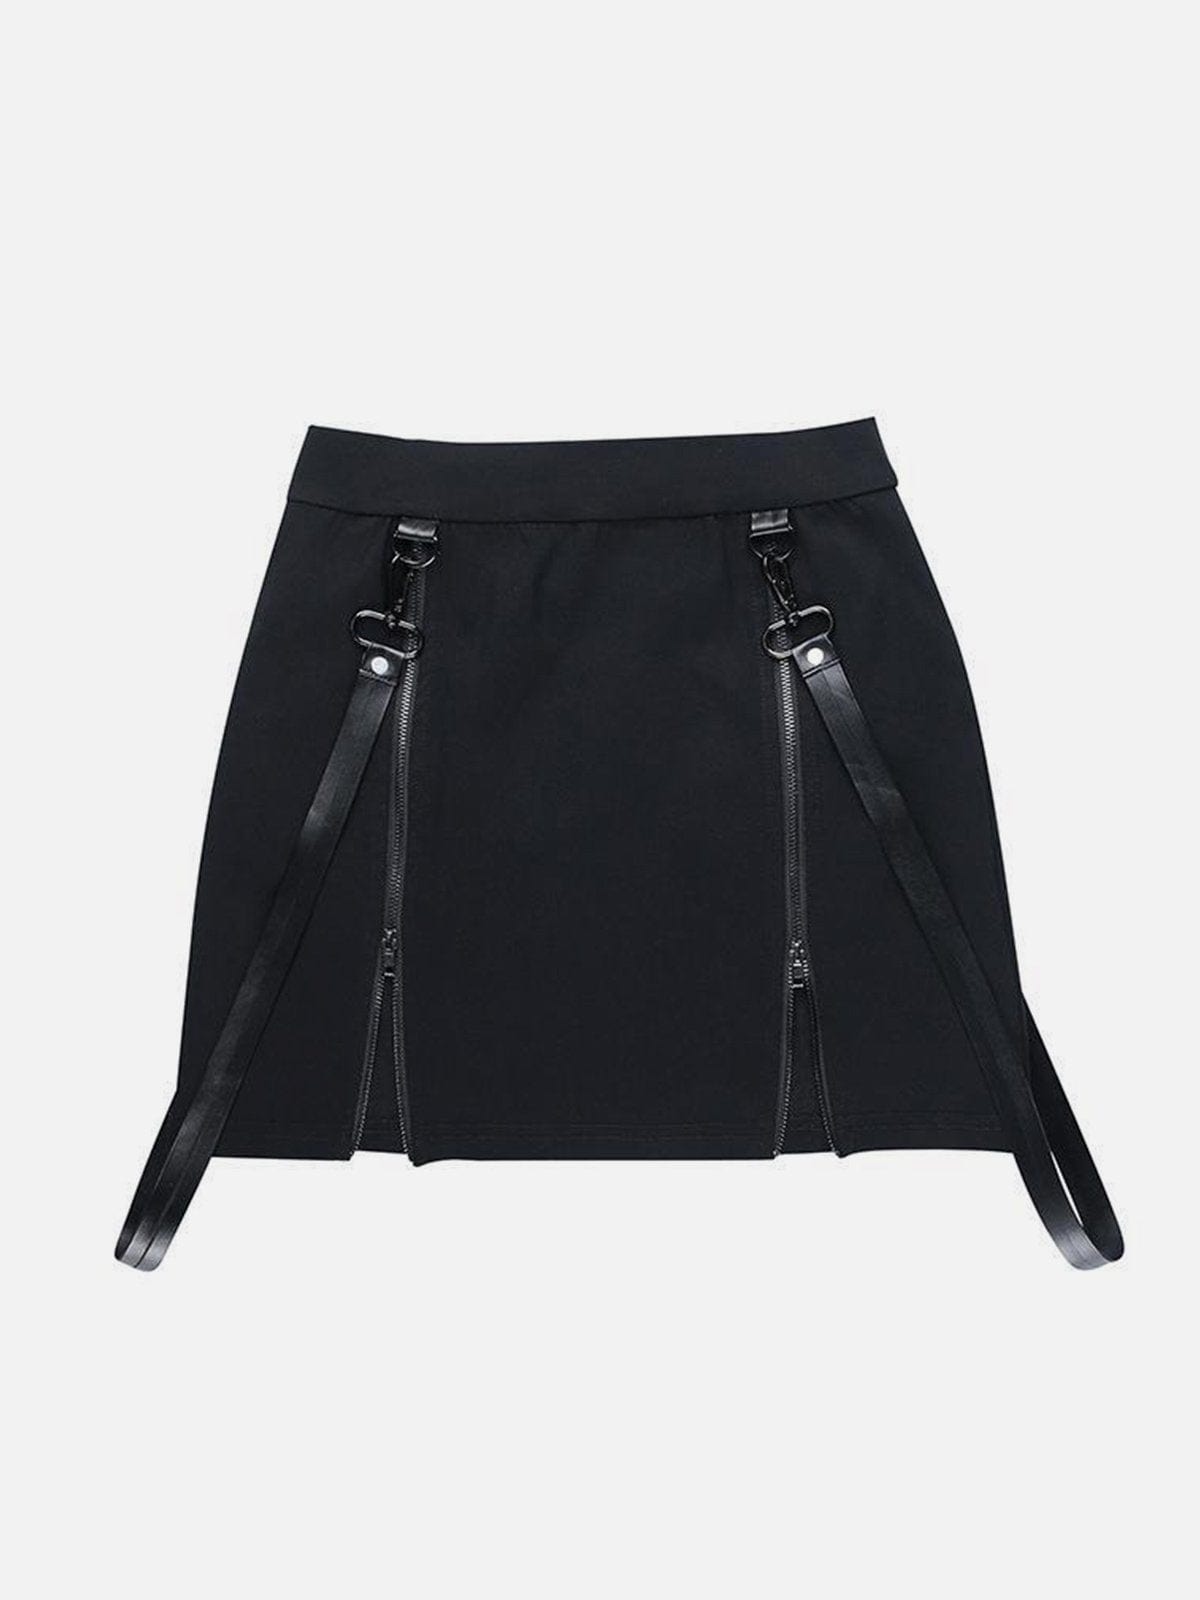 NEV Double Zipper Hip Slit Skirt